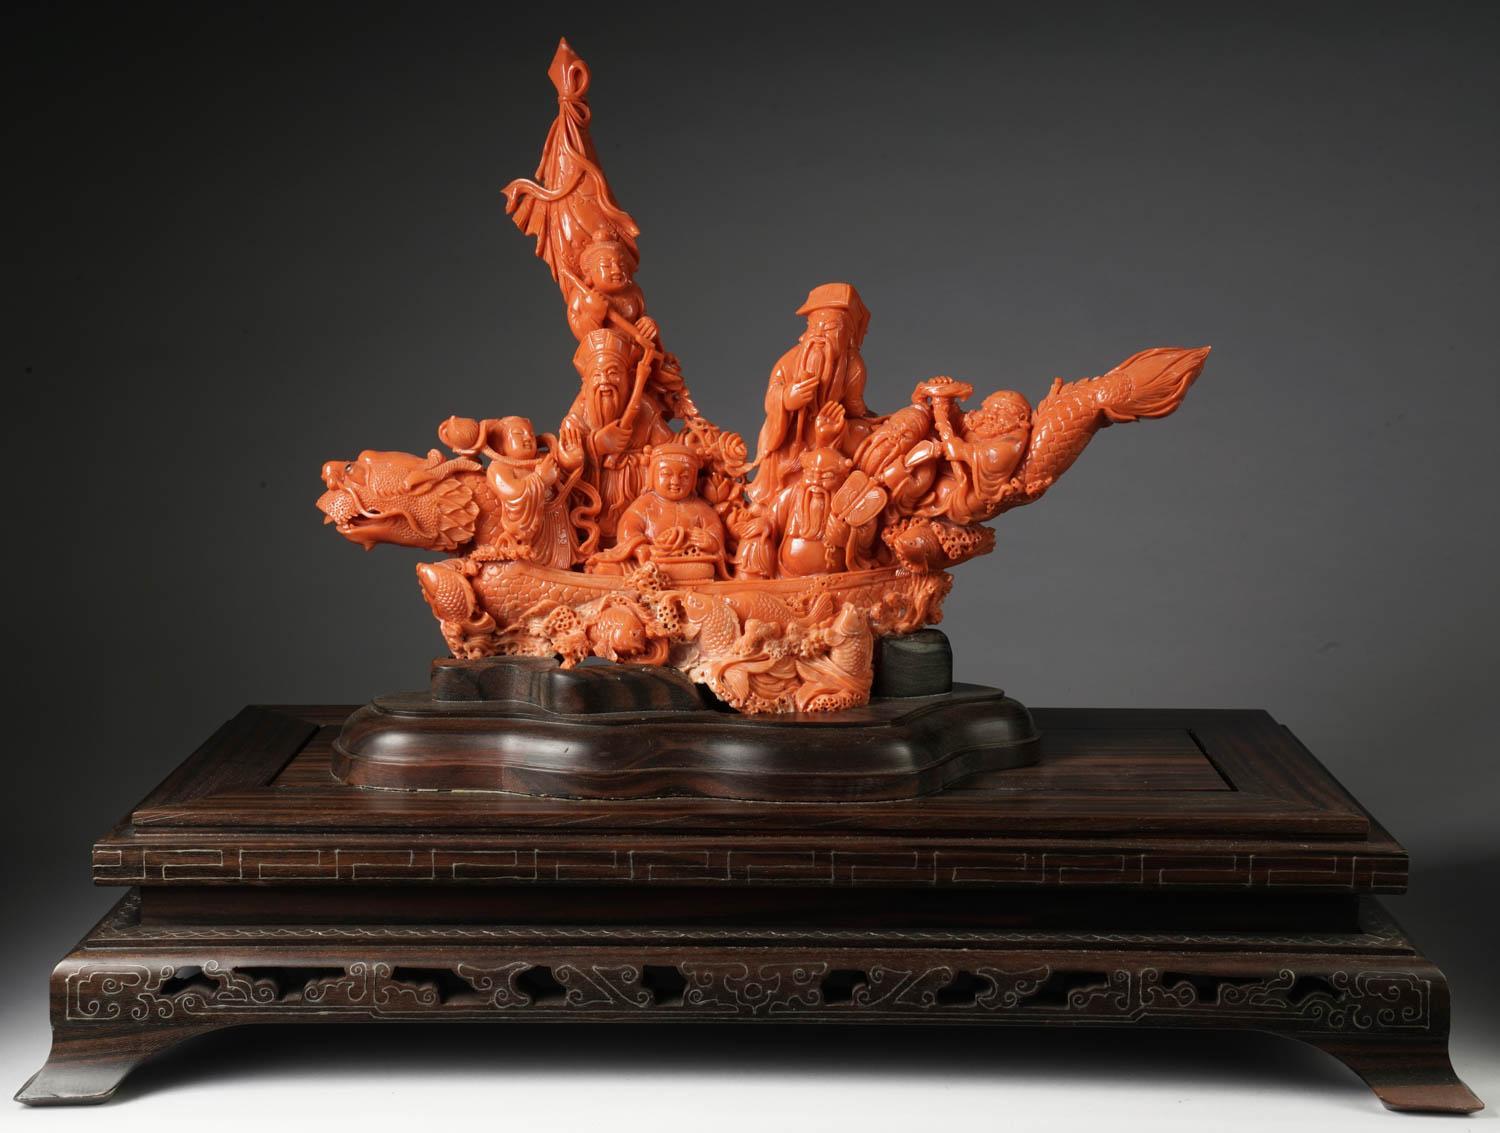 Eine außergewöhnliche chinesische geschnitzte Korallenfigurengruppe oder Statue eines Bootes mit acht Unsterblichen. Das Boot hat die Form eines geschnitzten Drachens mit Fischen darin.

Sehr fein geschnitzt. 

Koralle misst: 10